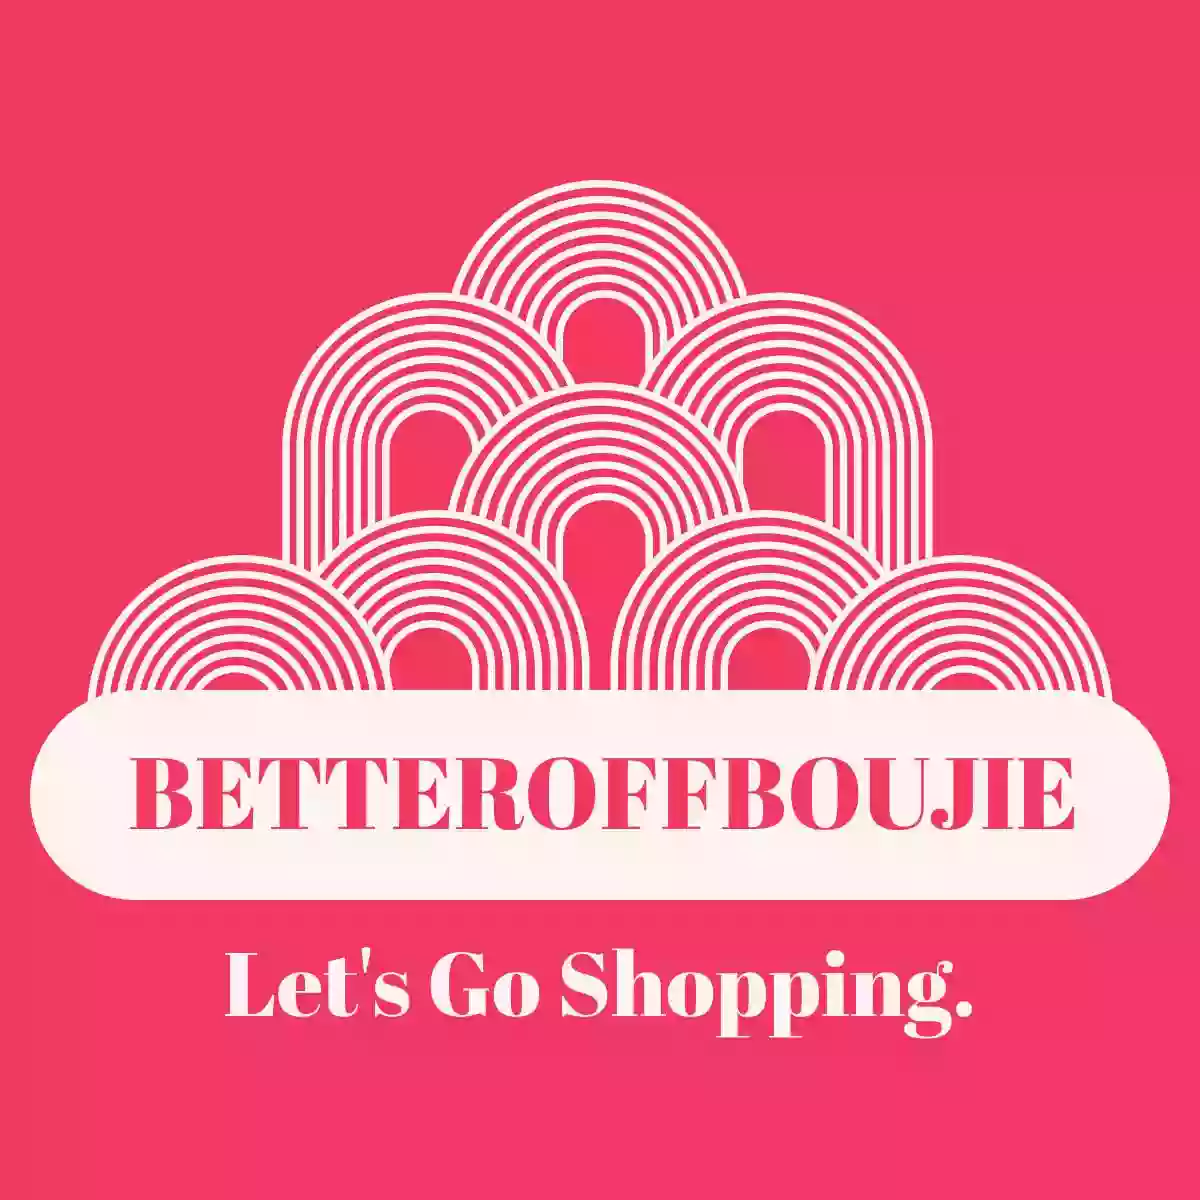 Betteroffboujie-Etsy